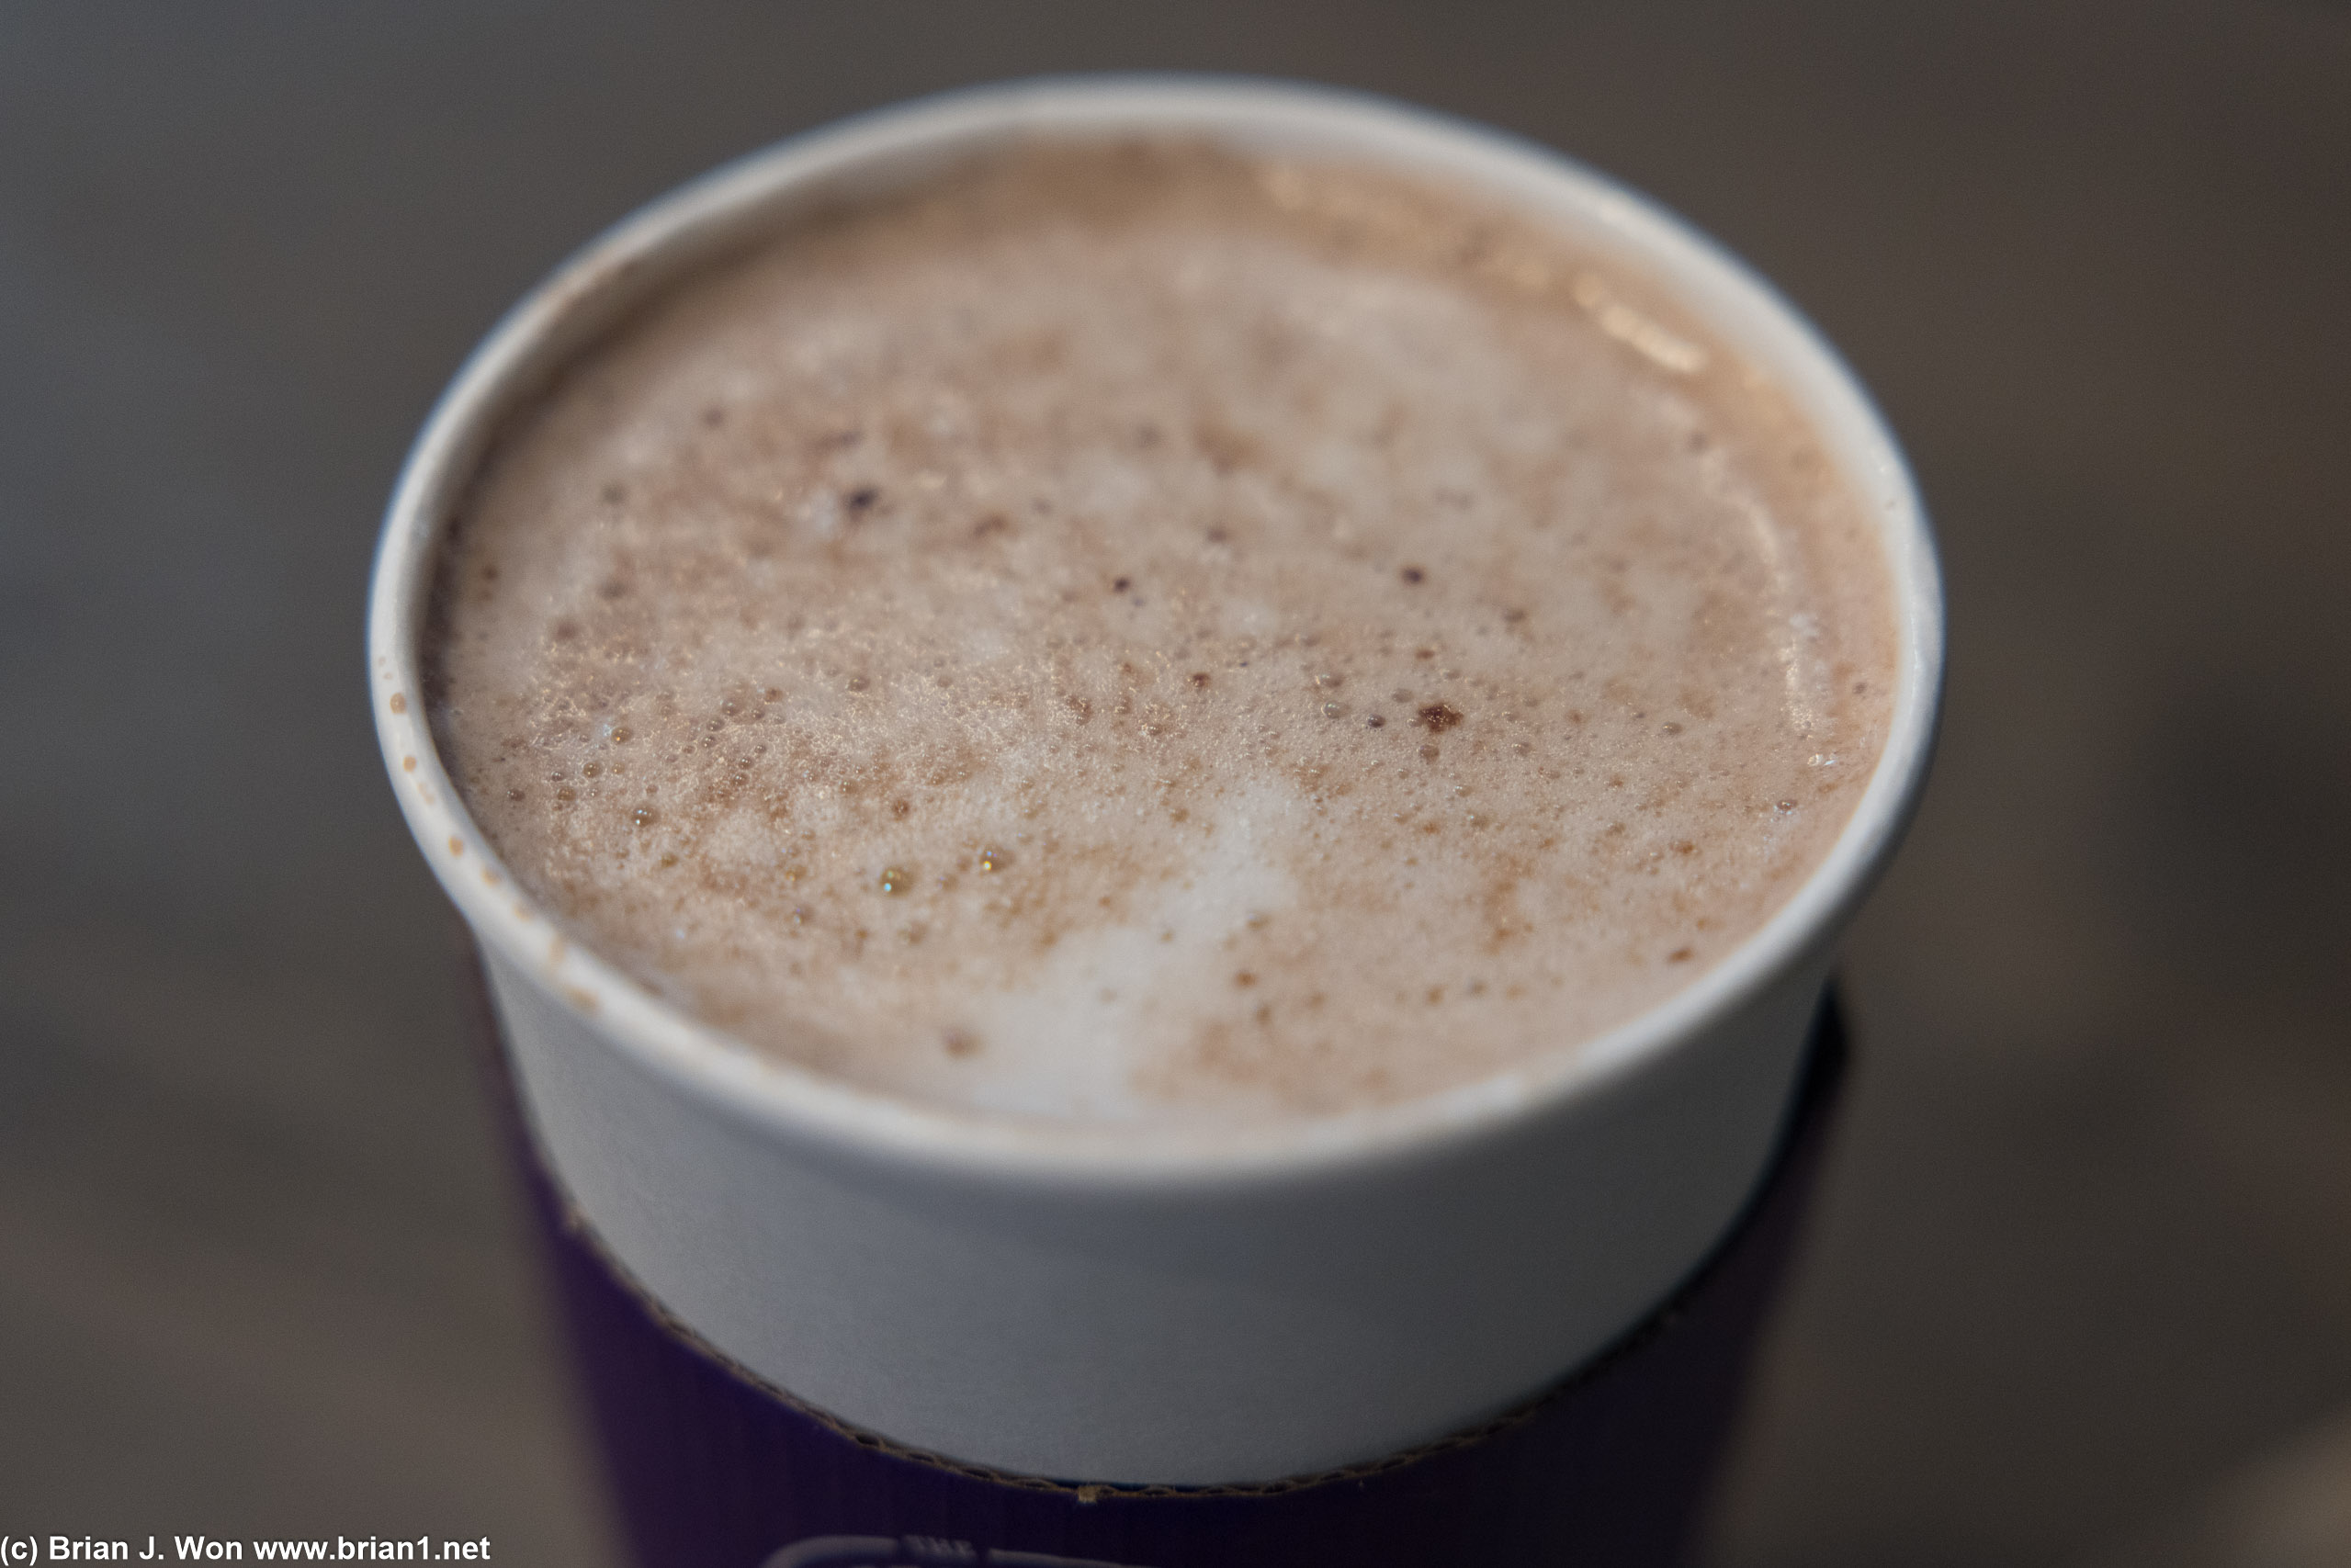 Hot chocolate at 6:00am.